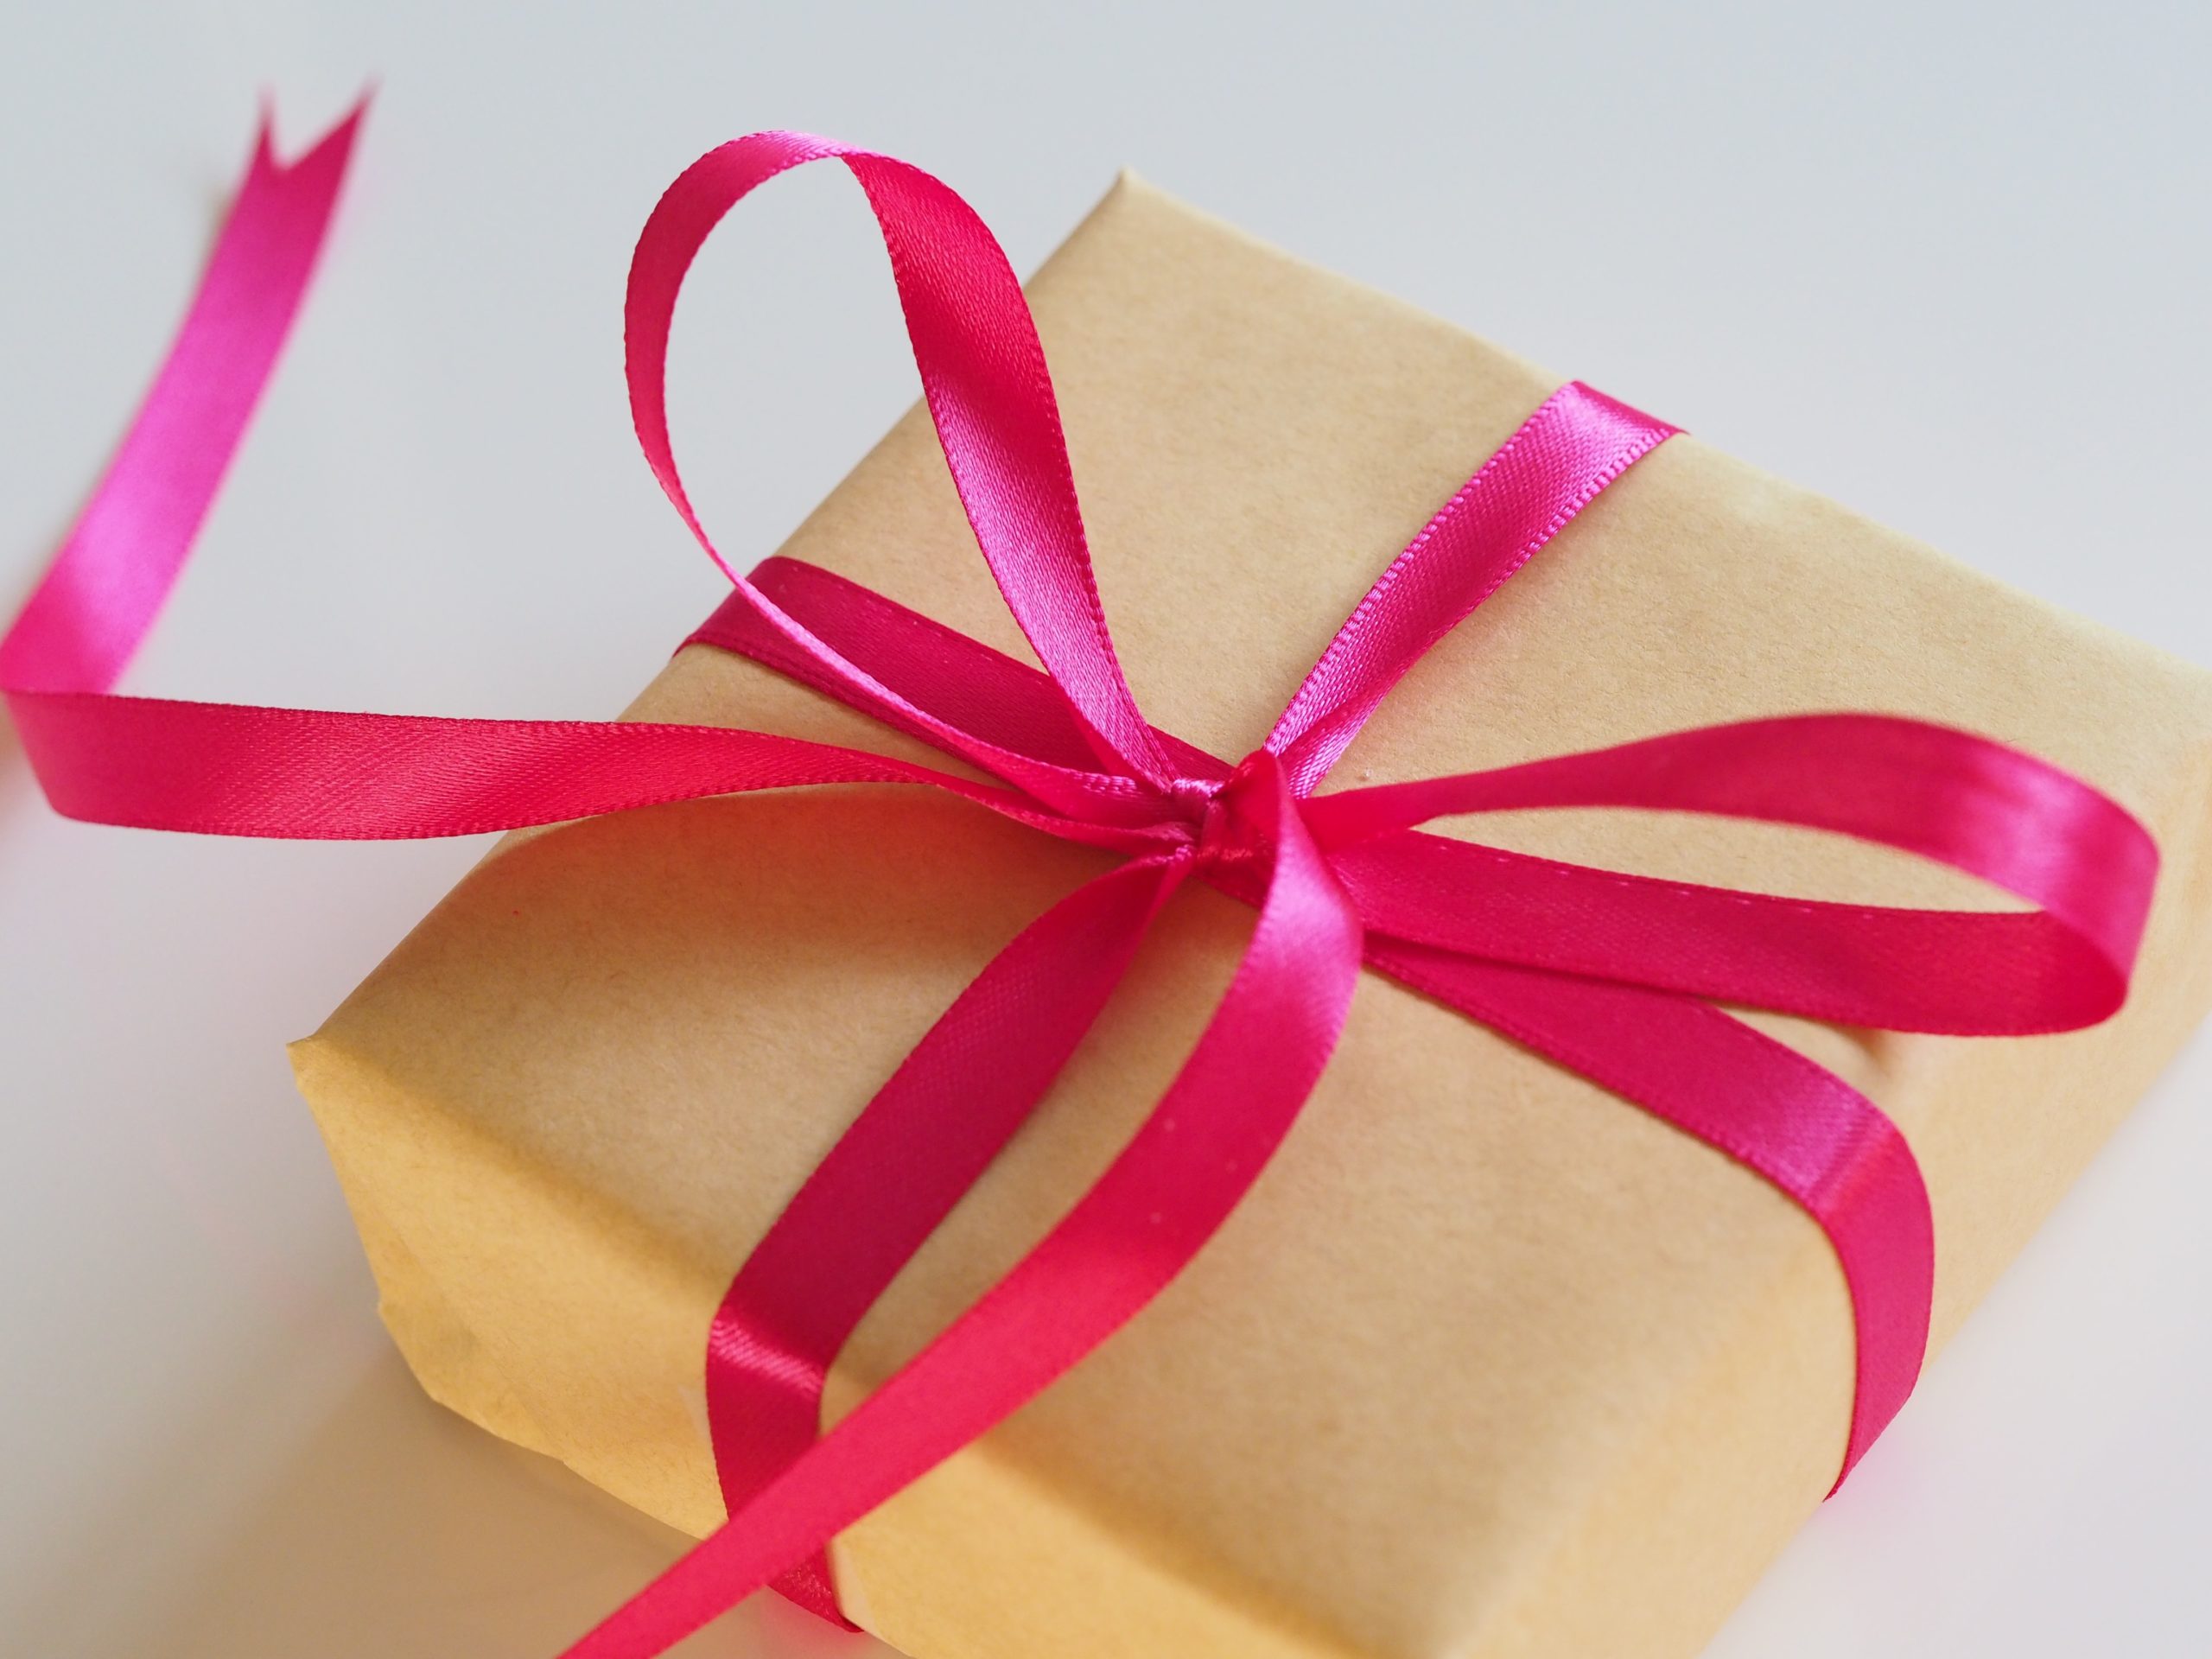 Экономика дара в XXI веке: Почему мы стали чаще делать подарки?